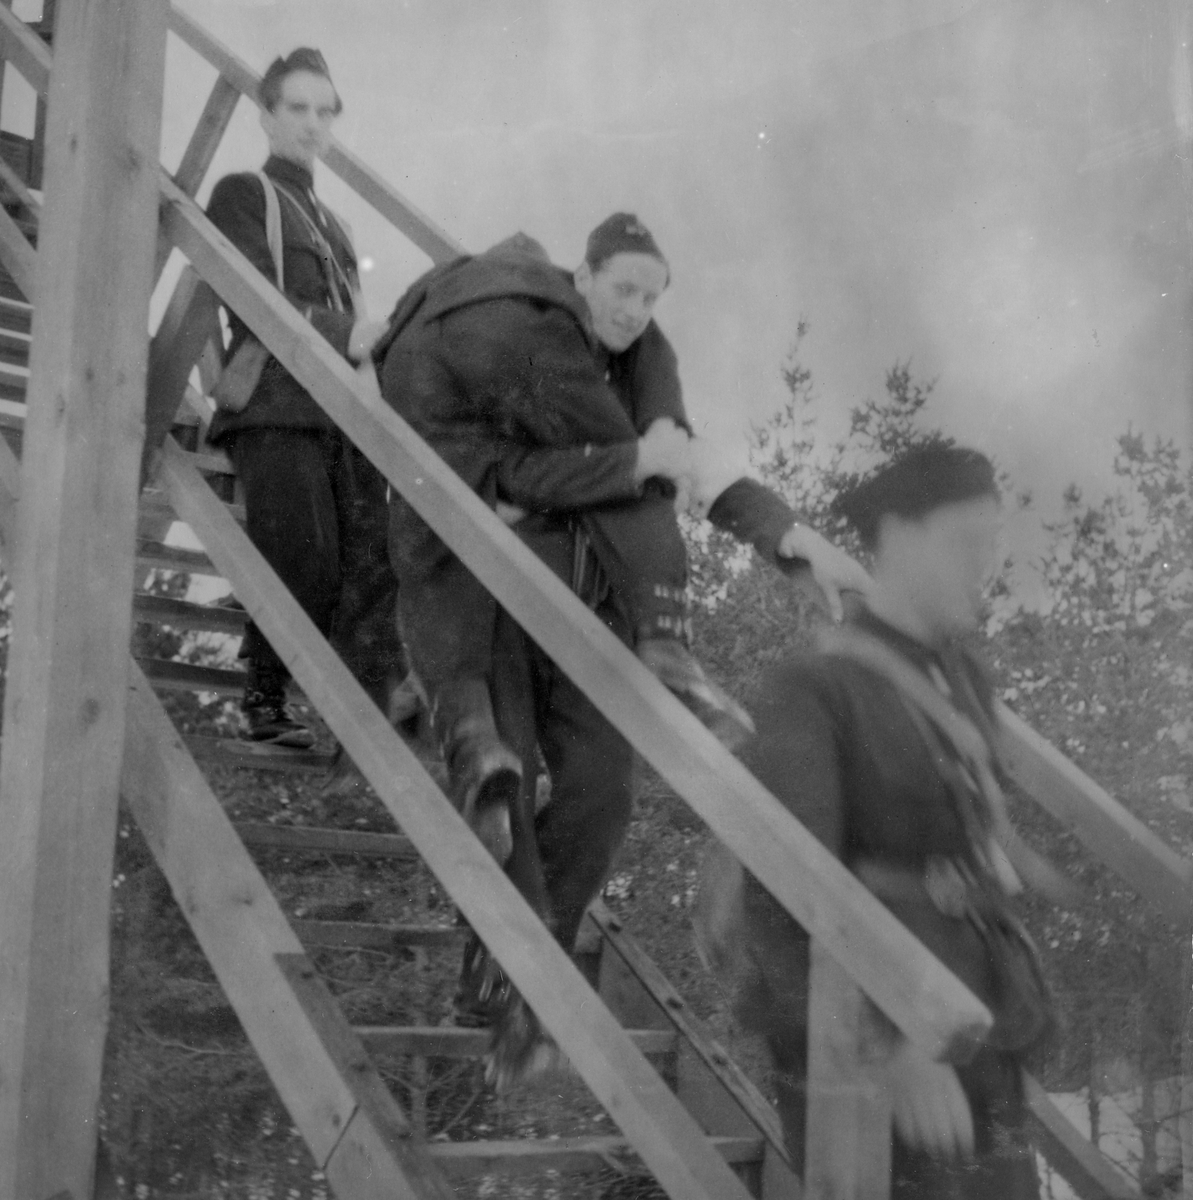 Skadad soldat bärs nedför trappan från ett luftvärnstorn vid sjukvårdsövning i fält vid F 11 Södermanlands flygflottilj, 1945. 

Ur fotoalbum "Sjukvårdsskolan 15/1-15/3 1945" från F 11.